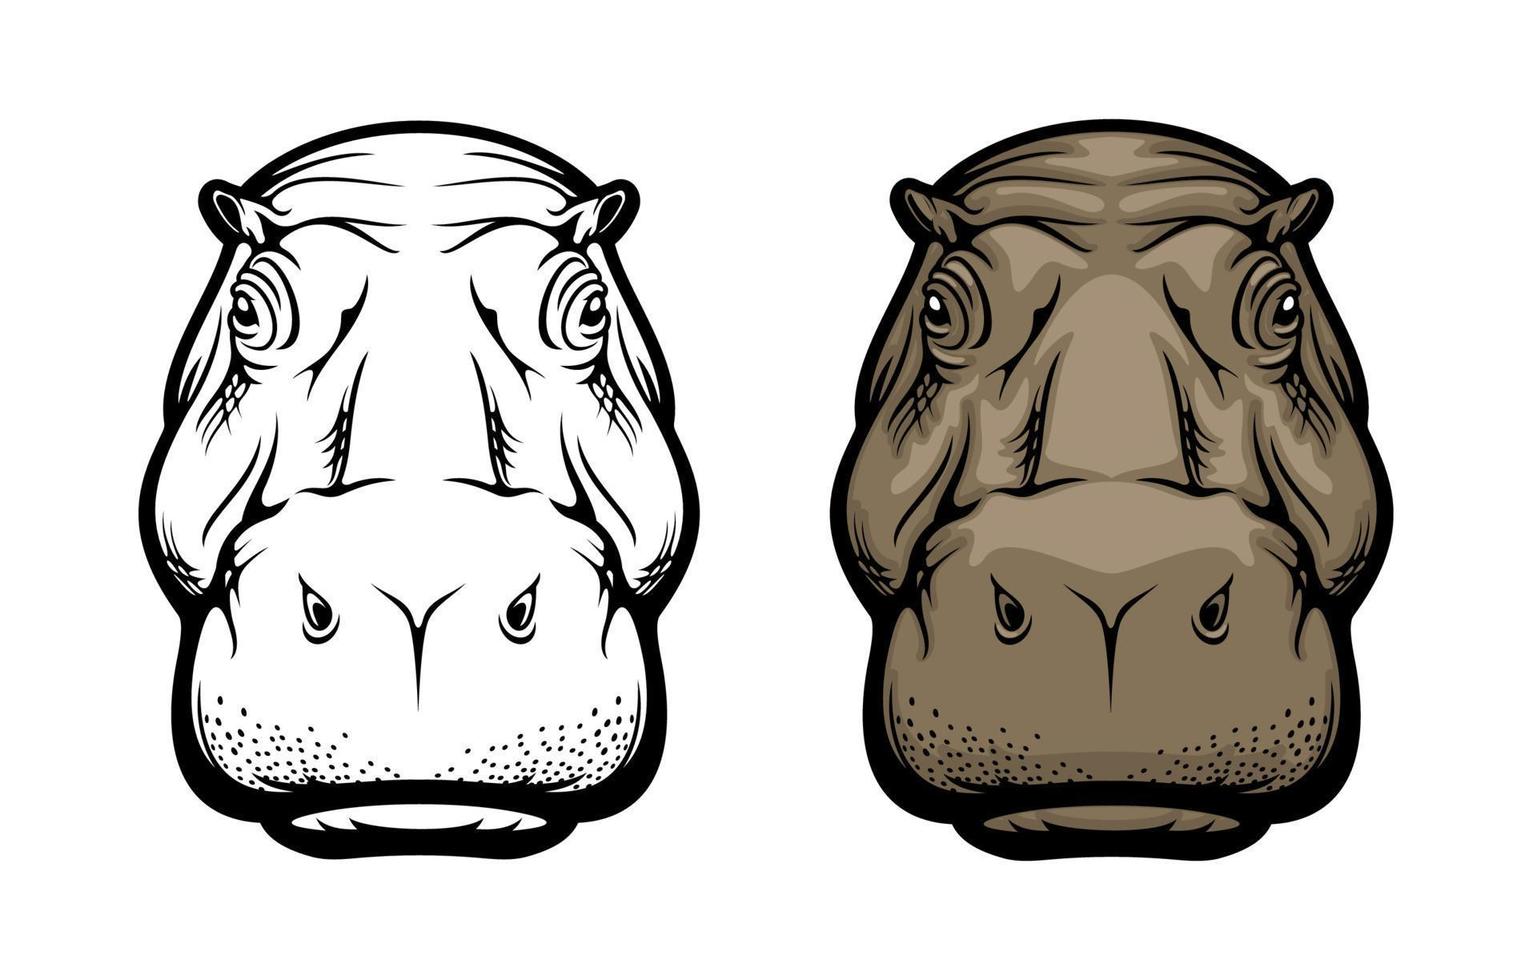 nijlpaard, nijlpaard wild Afrikaanse dier gezicht icoon vector